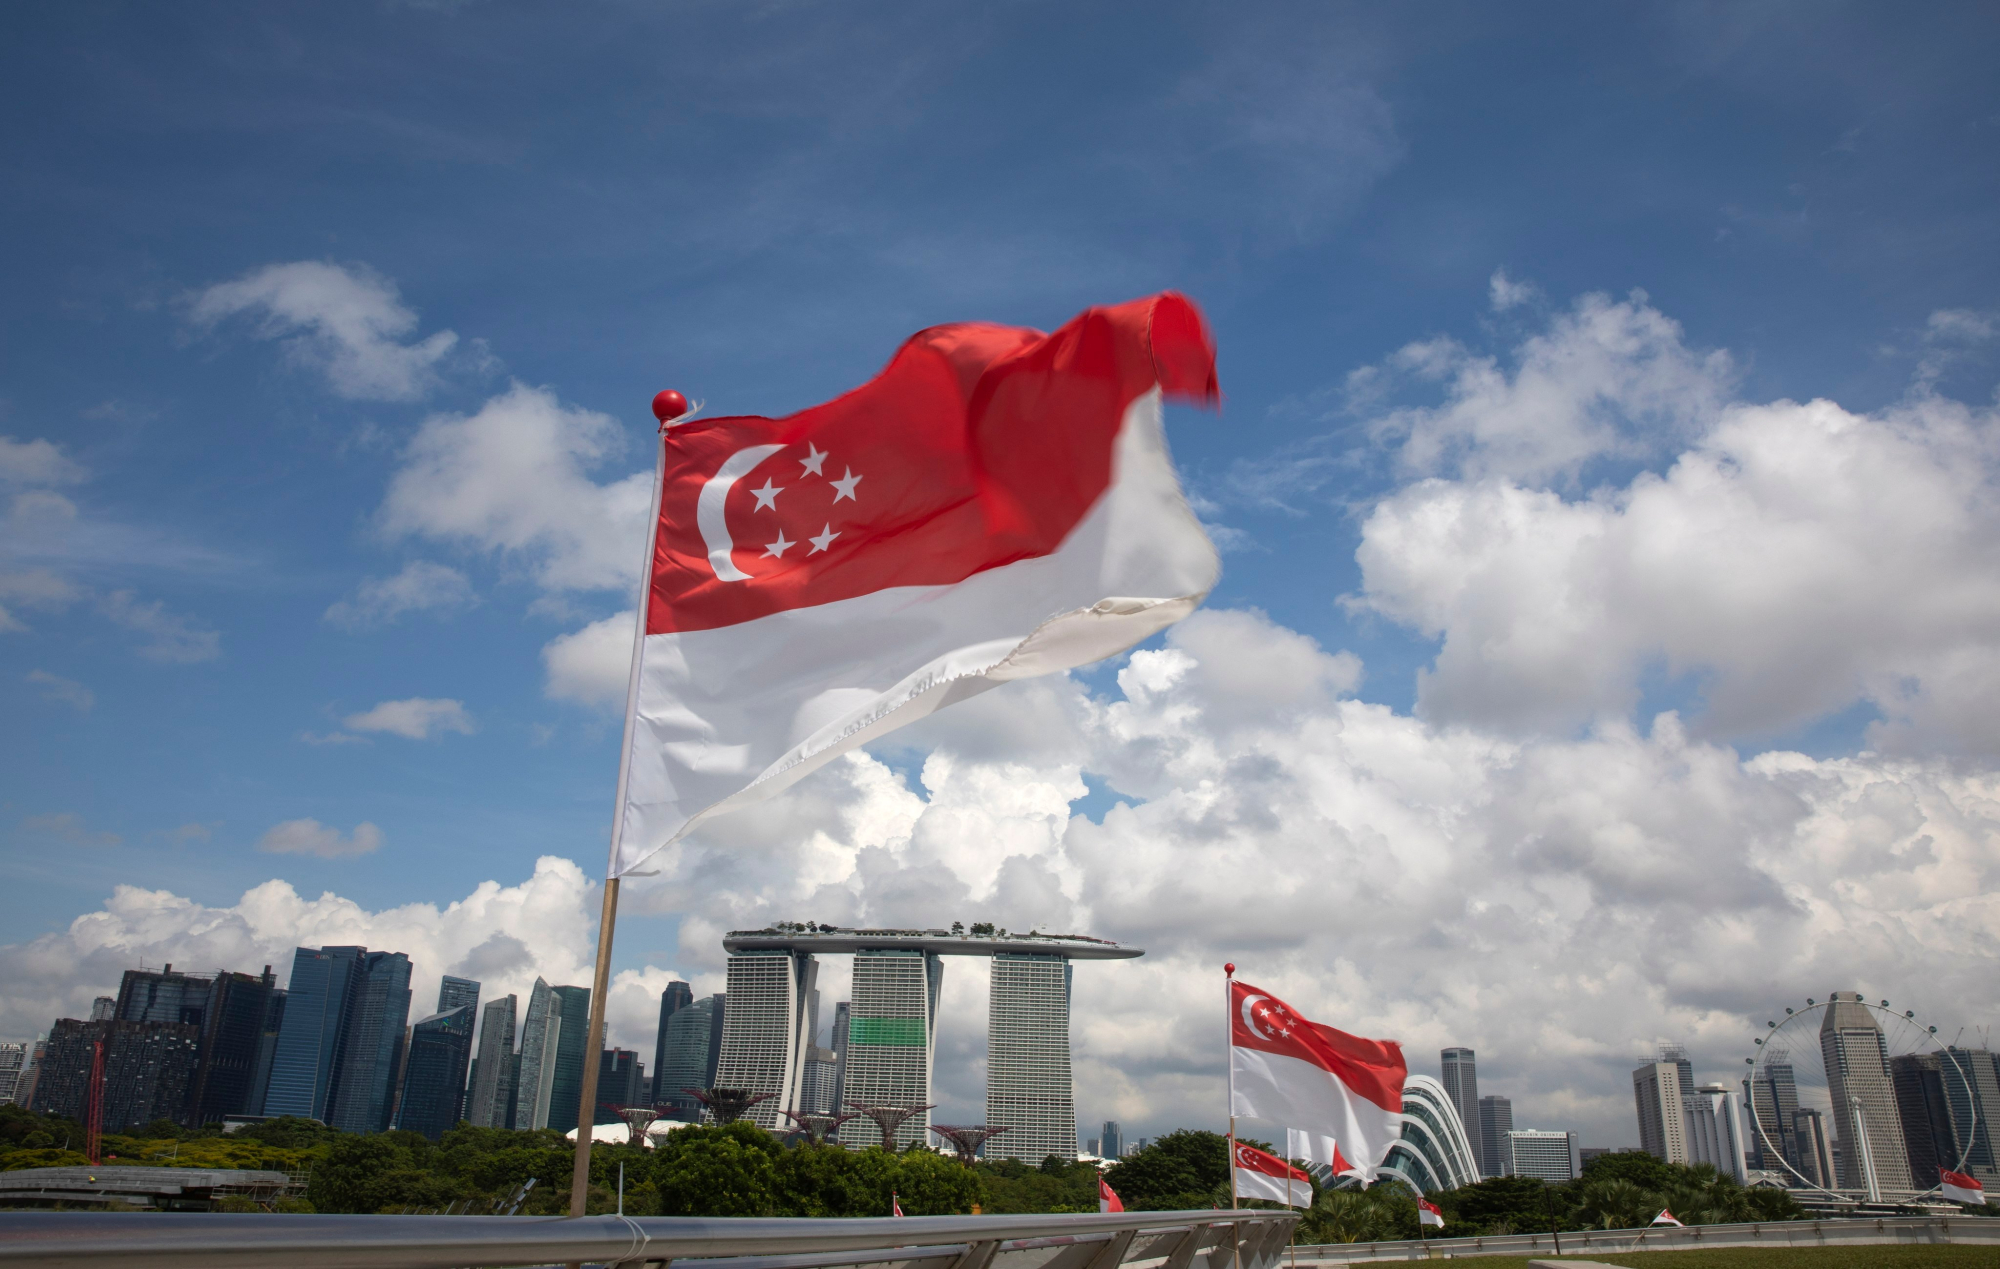 Bất động sản Singapore: Singapore đang trở thành một trong những thị trường bất động sản phải chăng nhất thế giới. Điều này mở ra một cơ hội đặc biệt cho các nhà đầu tư trong nước và quốc tế. Hãy xem hình ảnh thể hiện tầm quan trọng của bất động sản Singapore và khám phá thị trường đầy tiềm năng này.